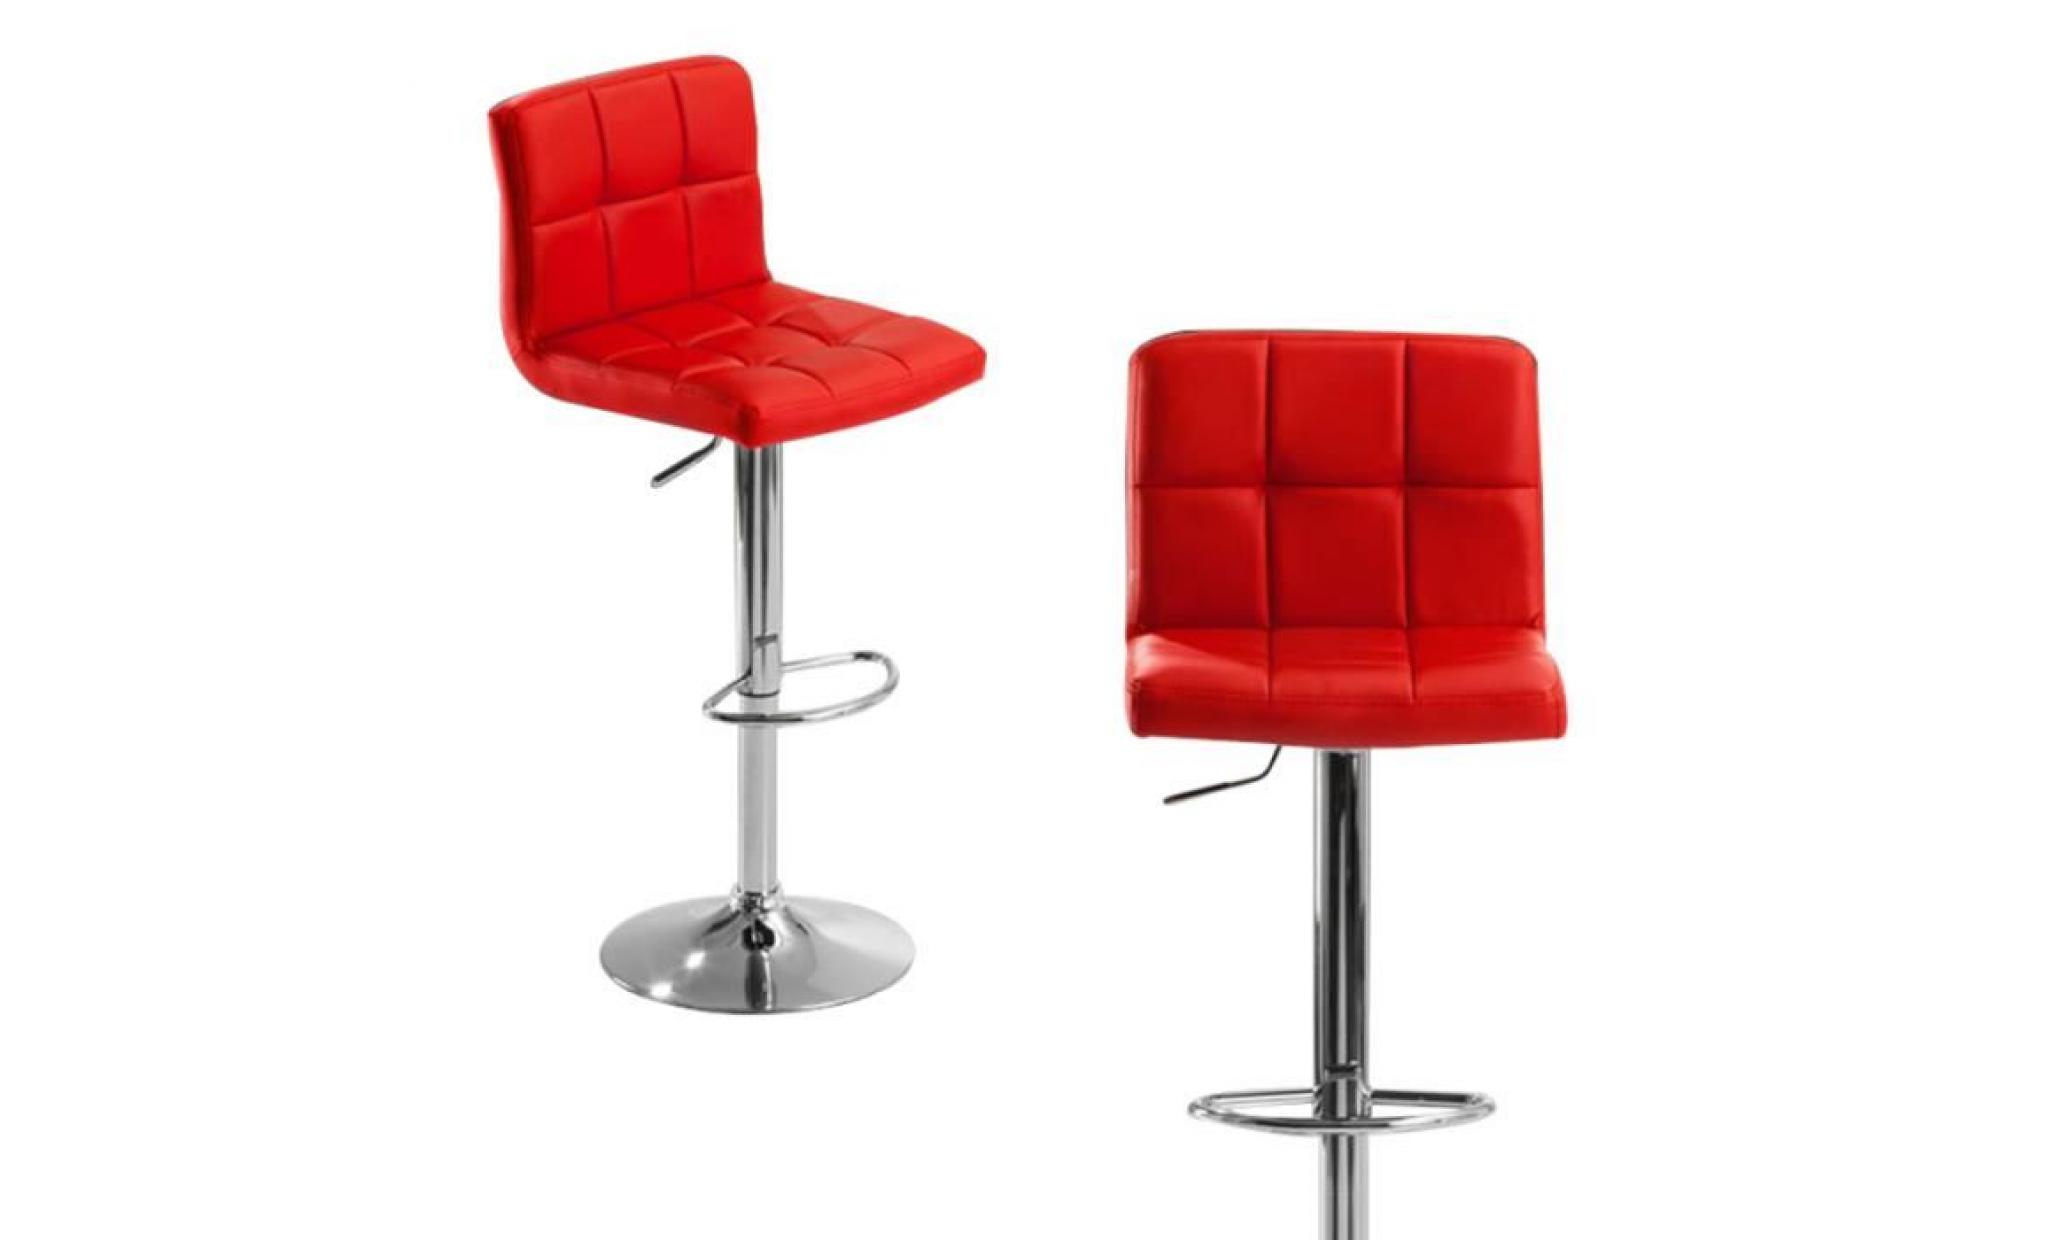 2 tabourets de bar avec siège bien rembourré, chaise de bar en pu,rouge